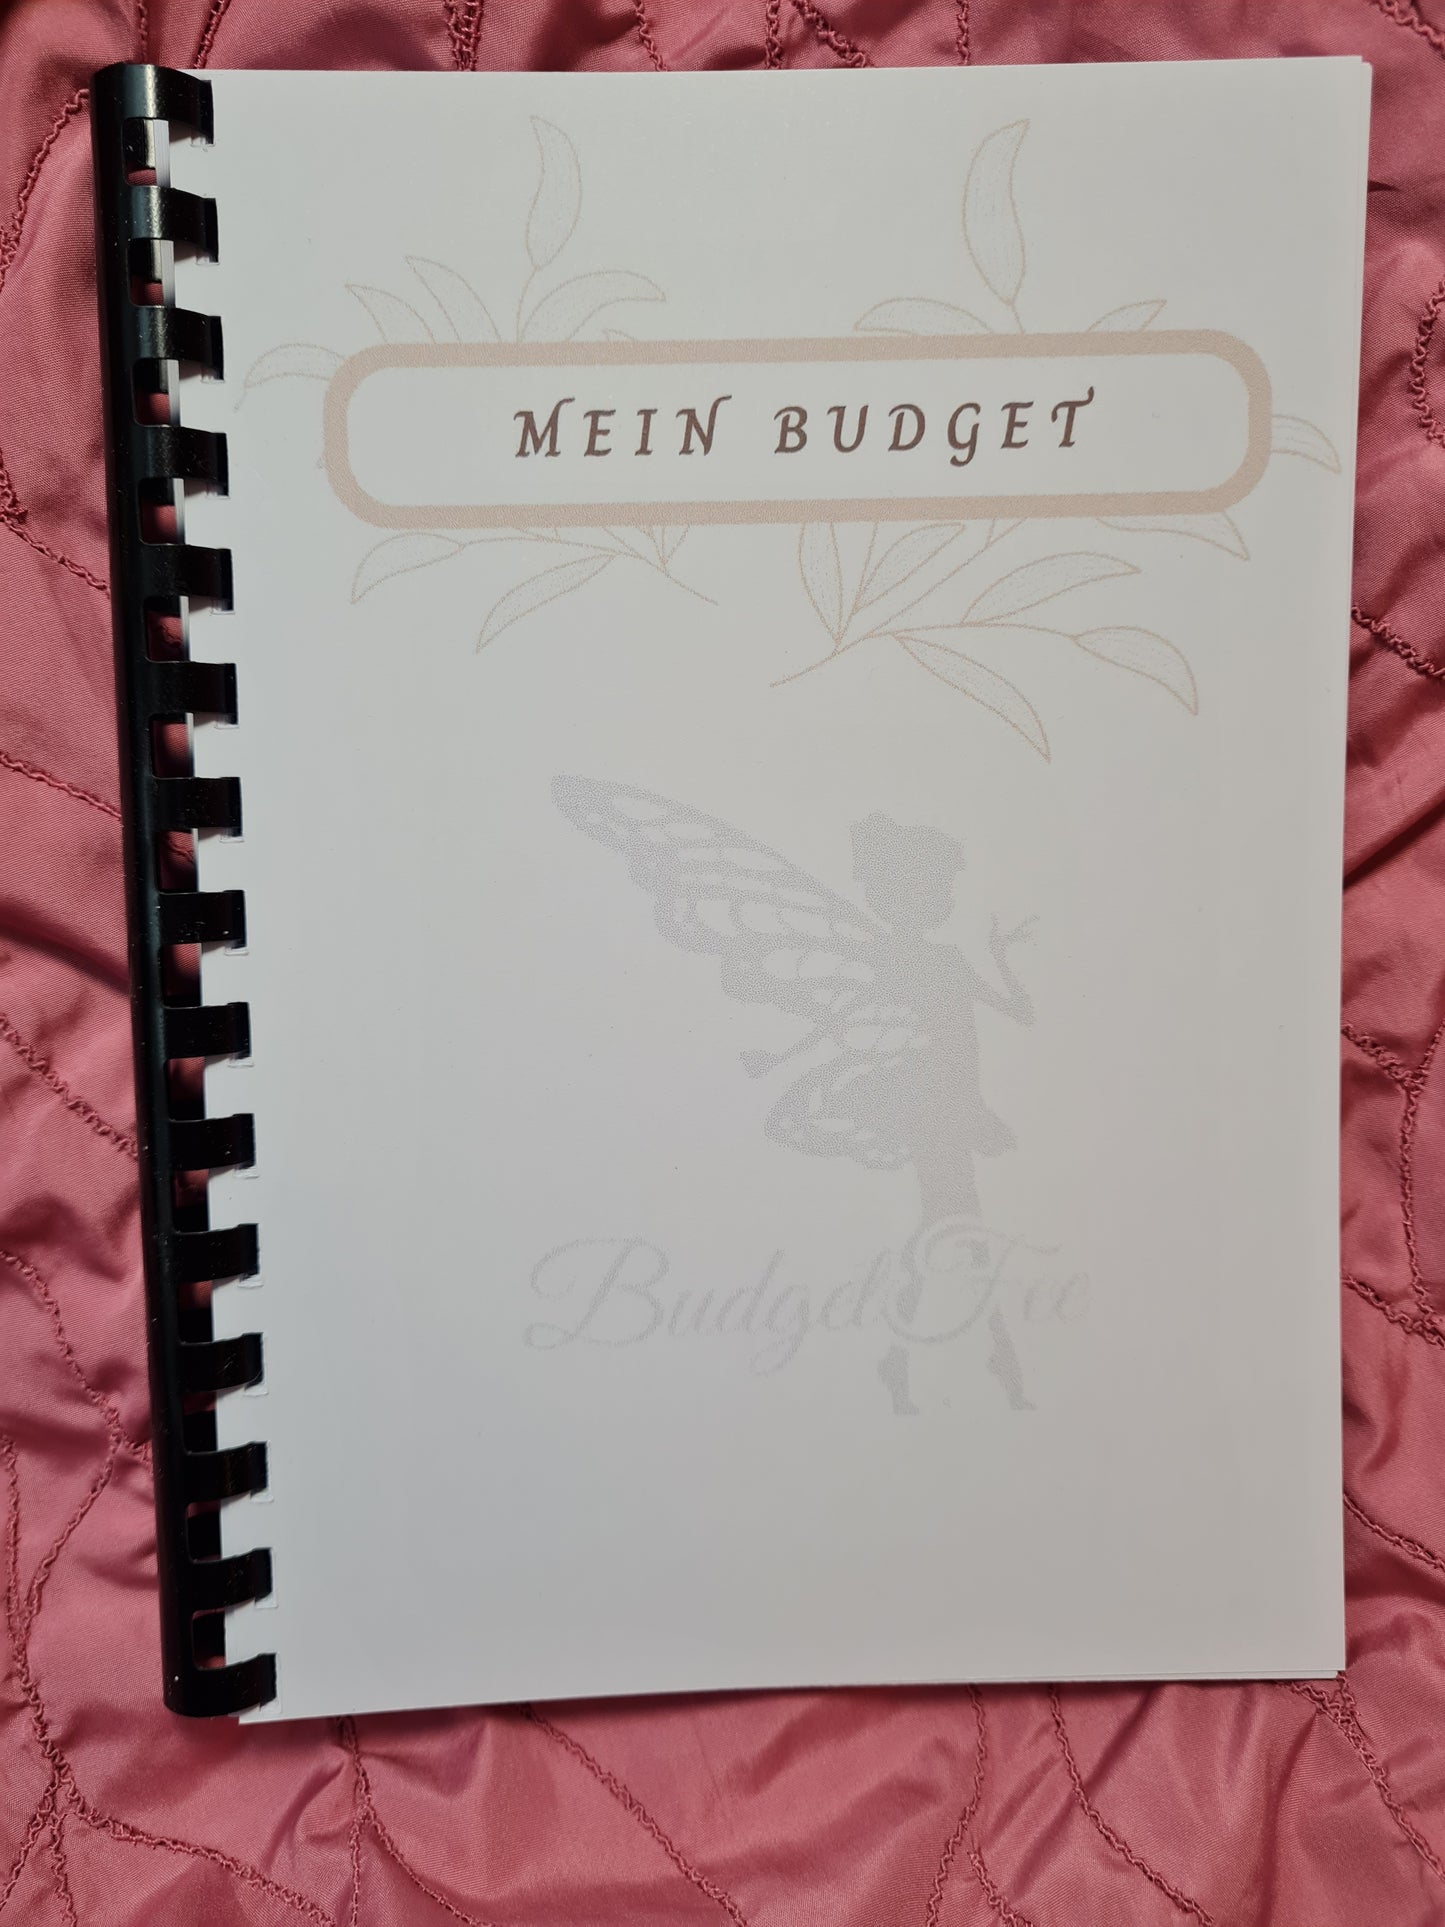 Budgetplaner / Haushaltsbuch in A5 im schlichten Design